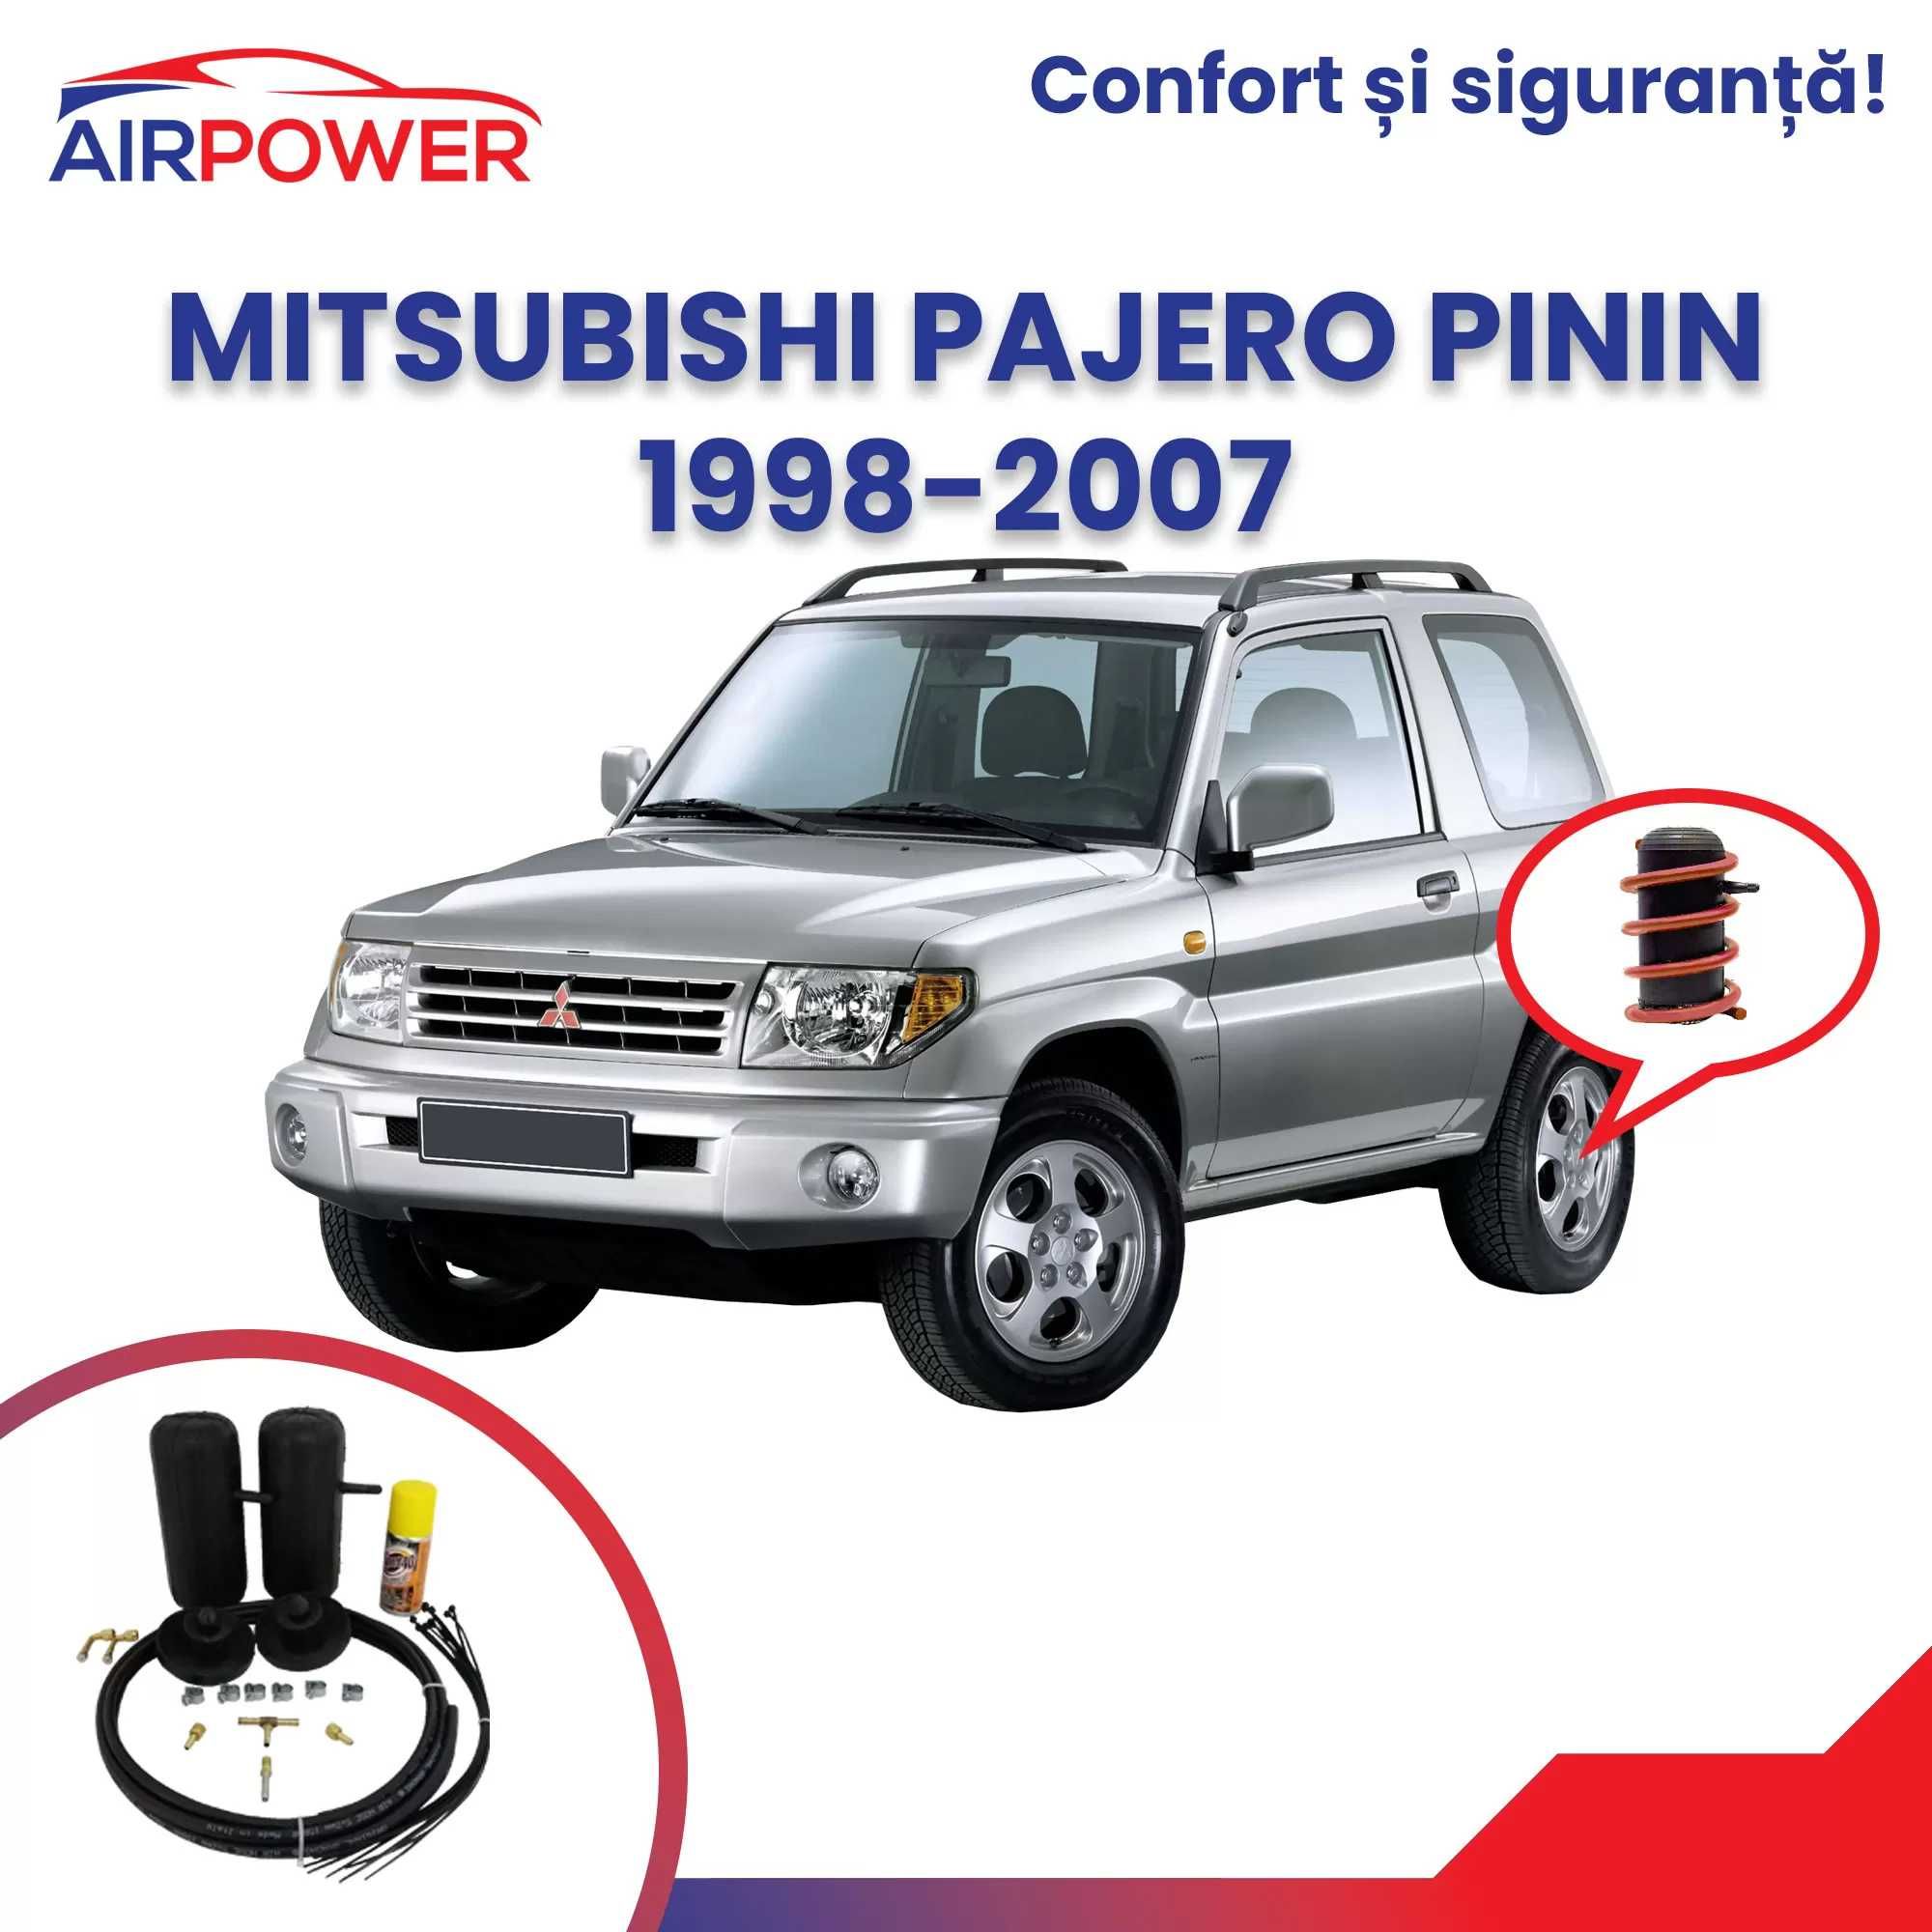 Perne auxiliare, perne auto pneumatice, Mitsubishi Pajero Pinin